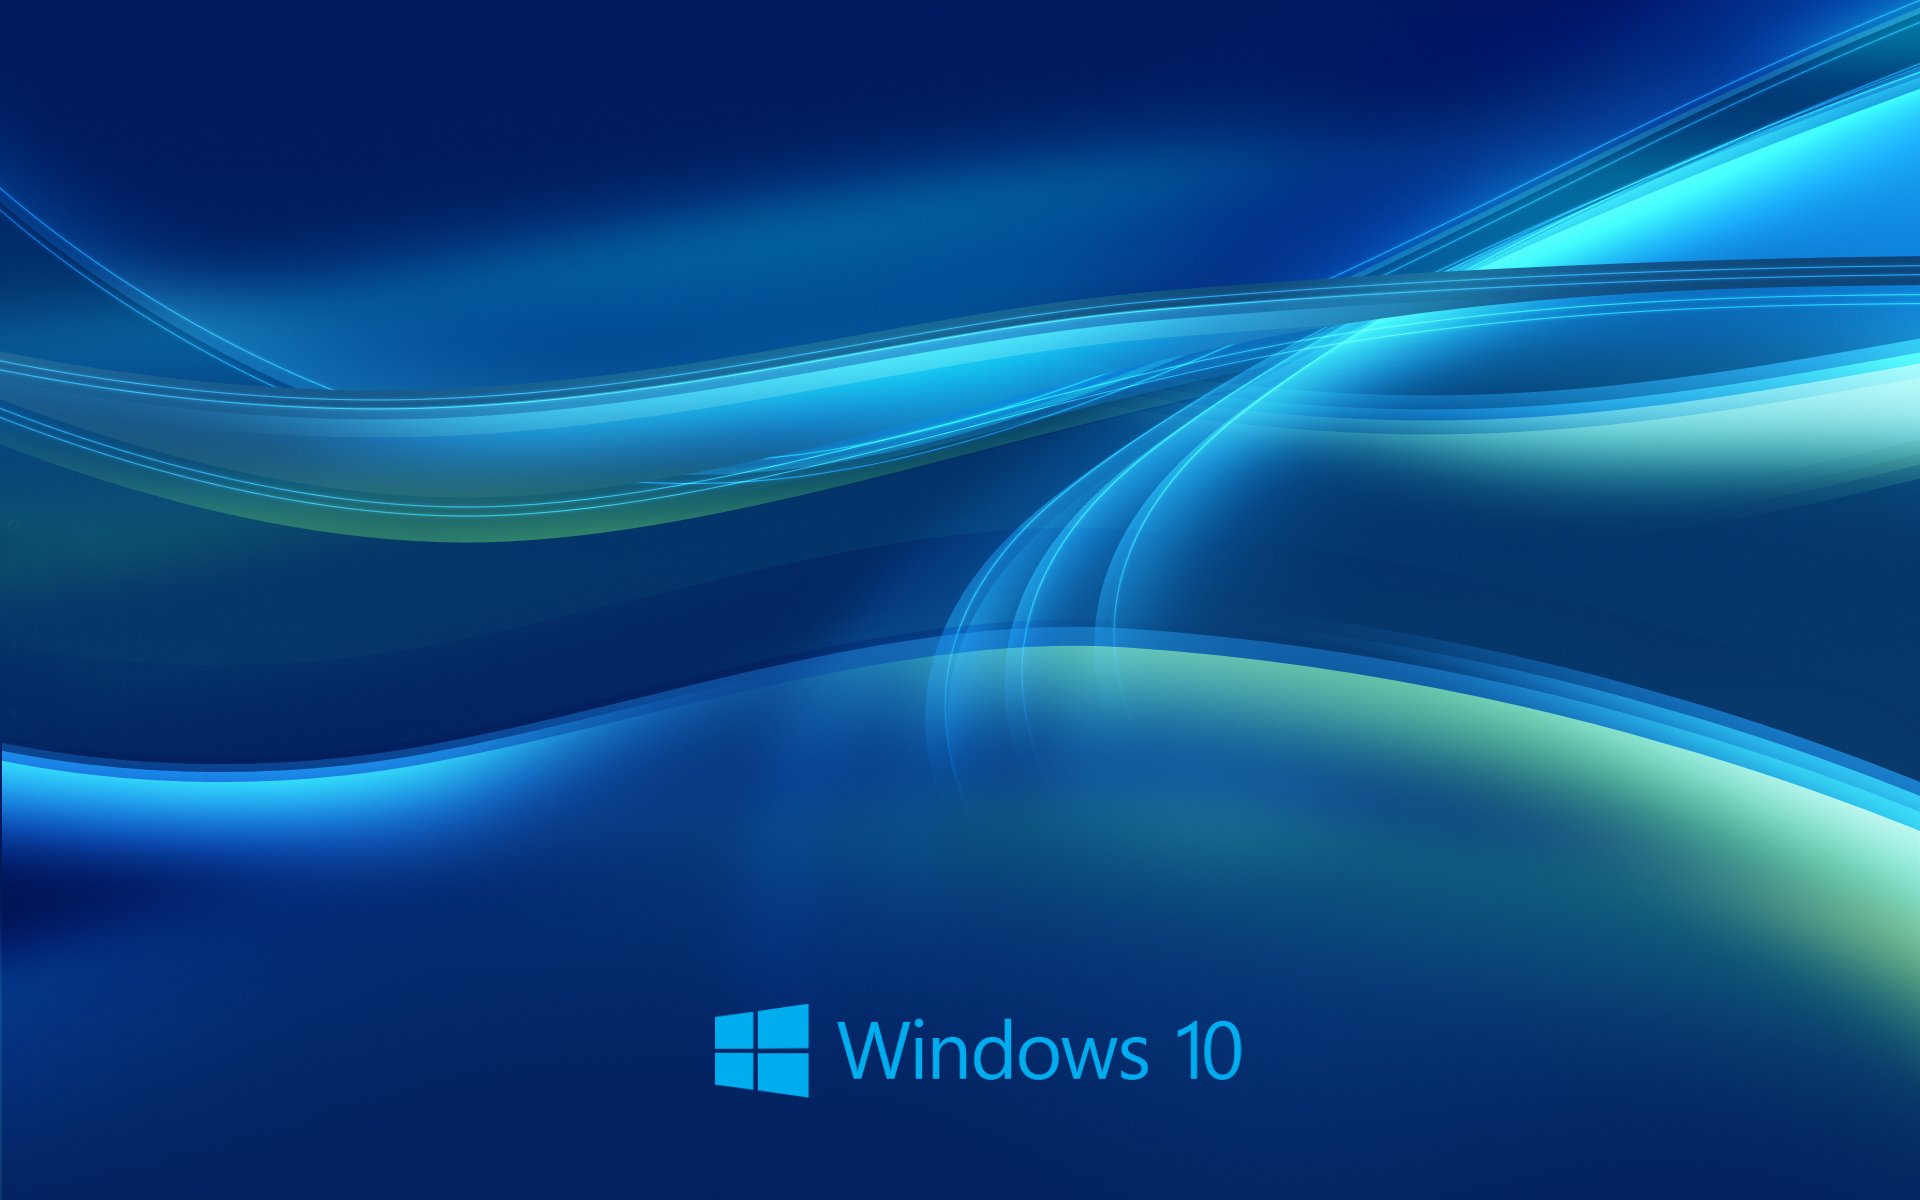 New Windows 10 Blue Wallpaper 9509 Wallpaper High Resolution 1920x1200